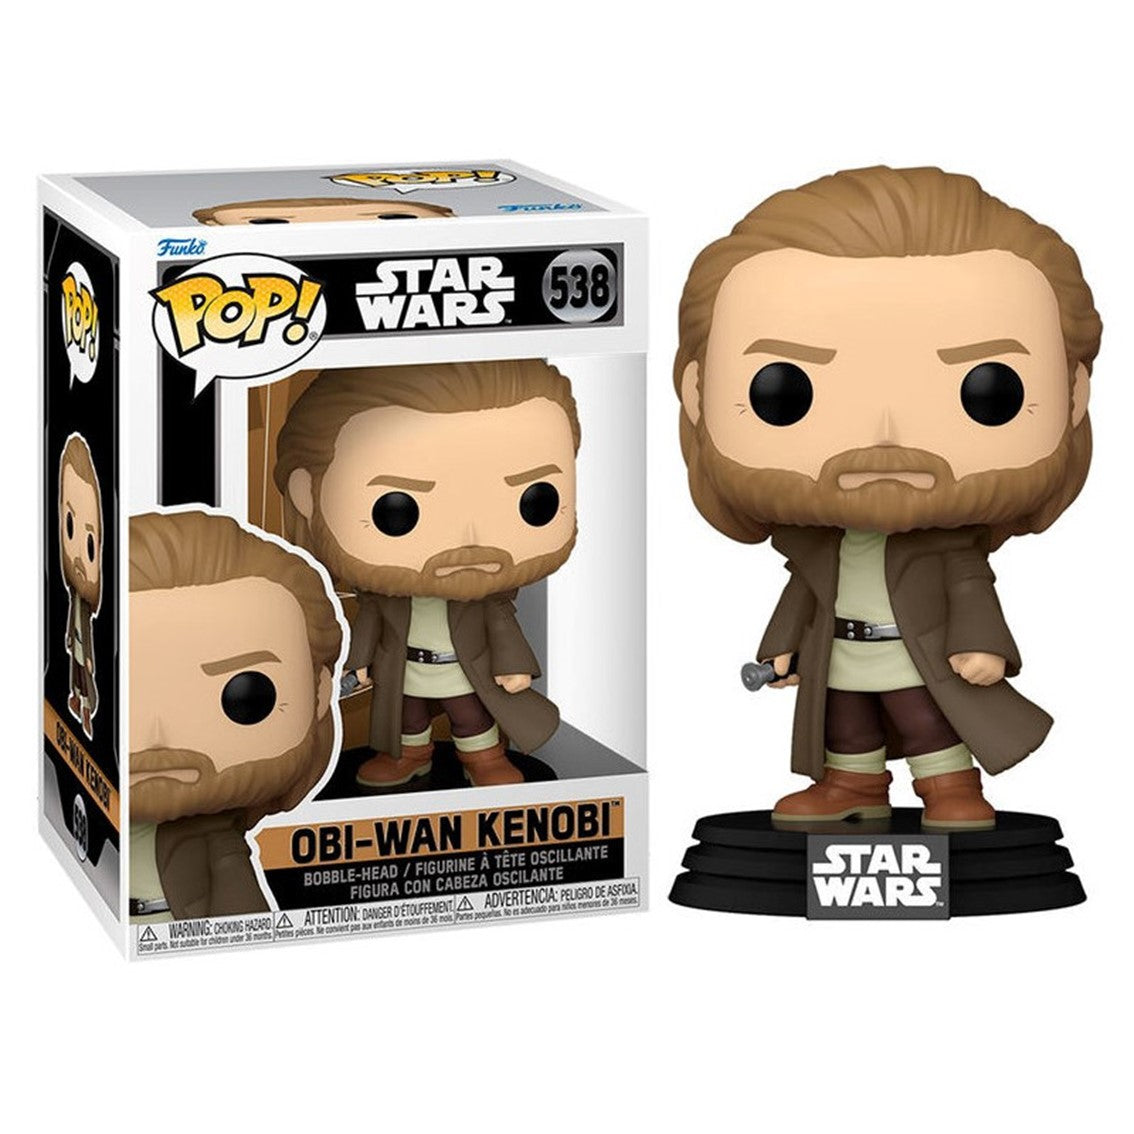 FUNKO POP! Star Wars: Obi-Wan Kenobi - Obi-Wan Kenobi 538